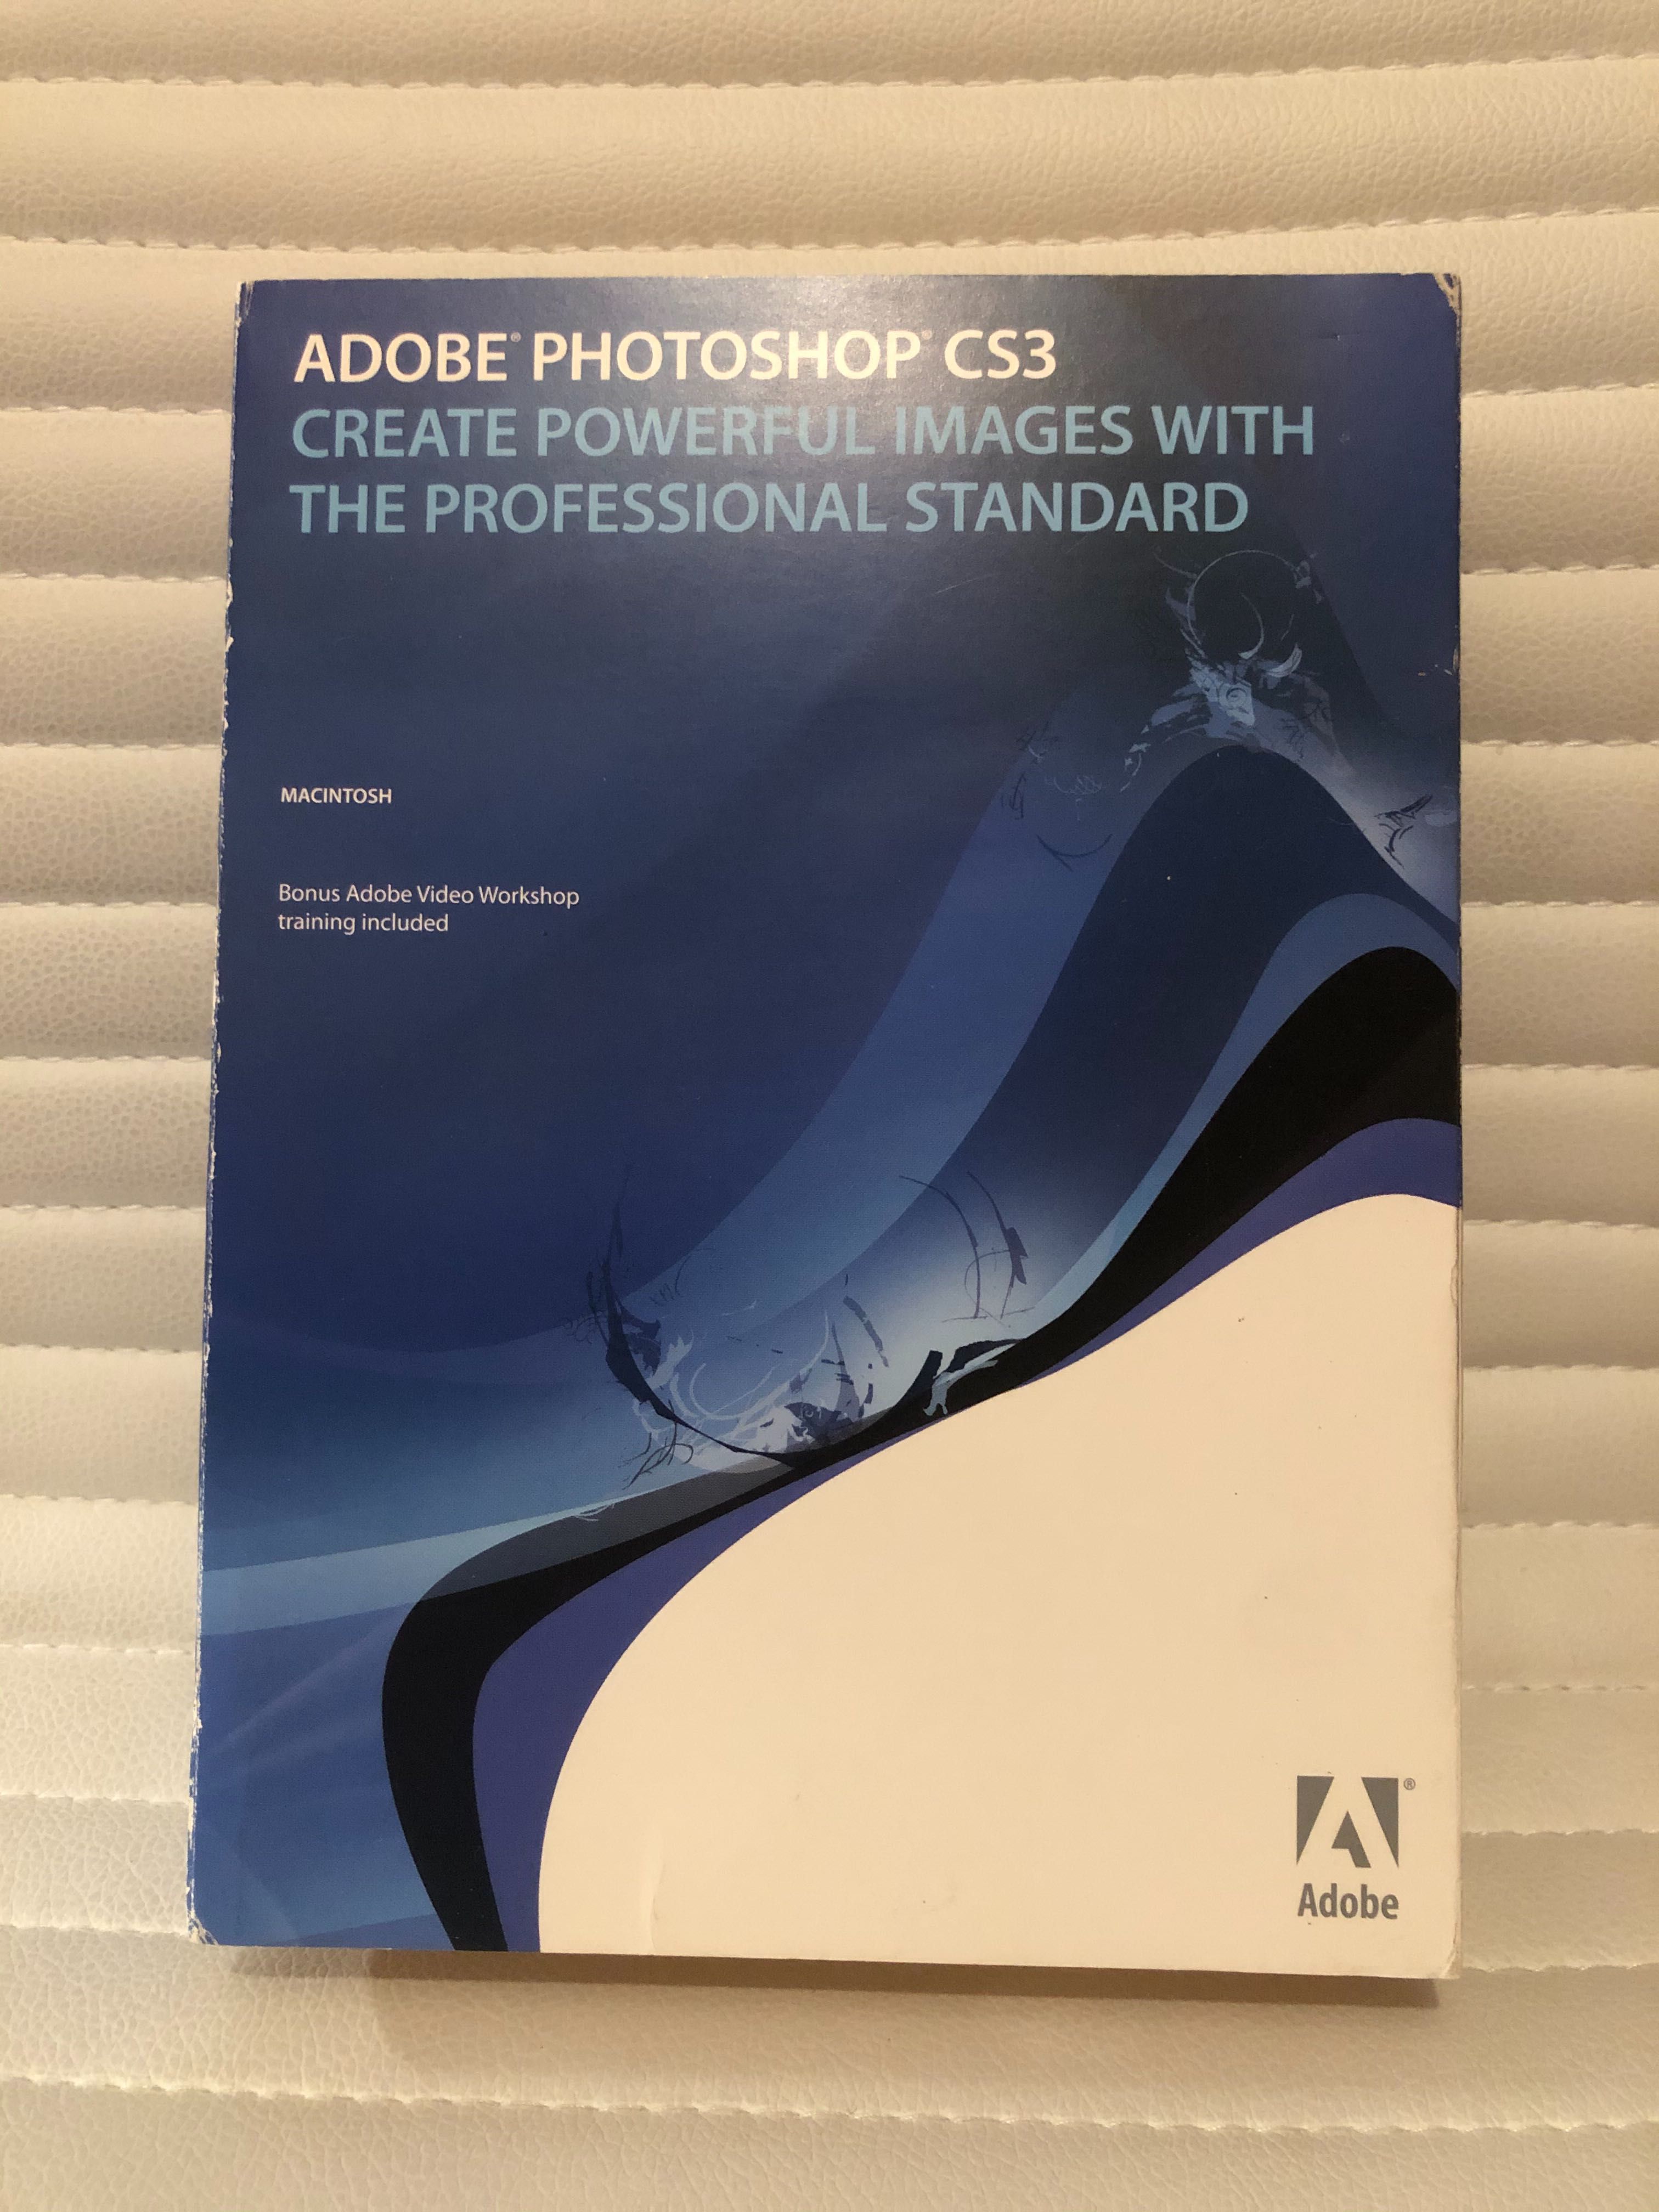 Photoshop CS3 + Adobe Creative Studio 3